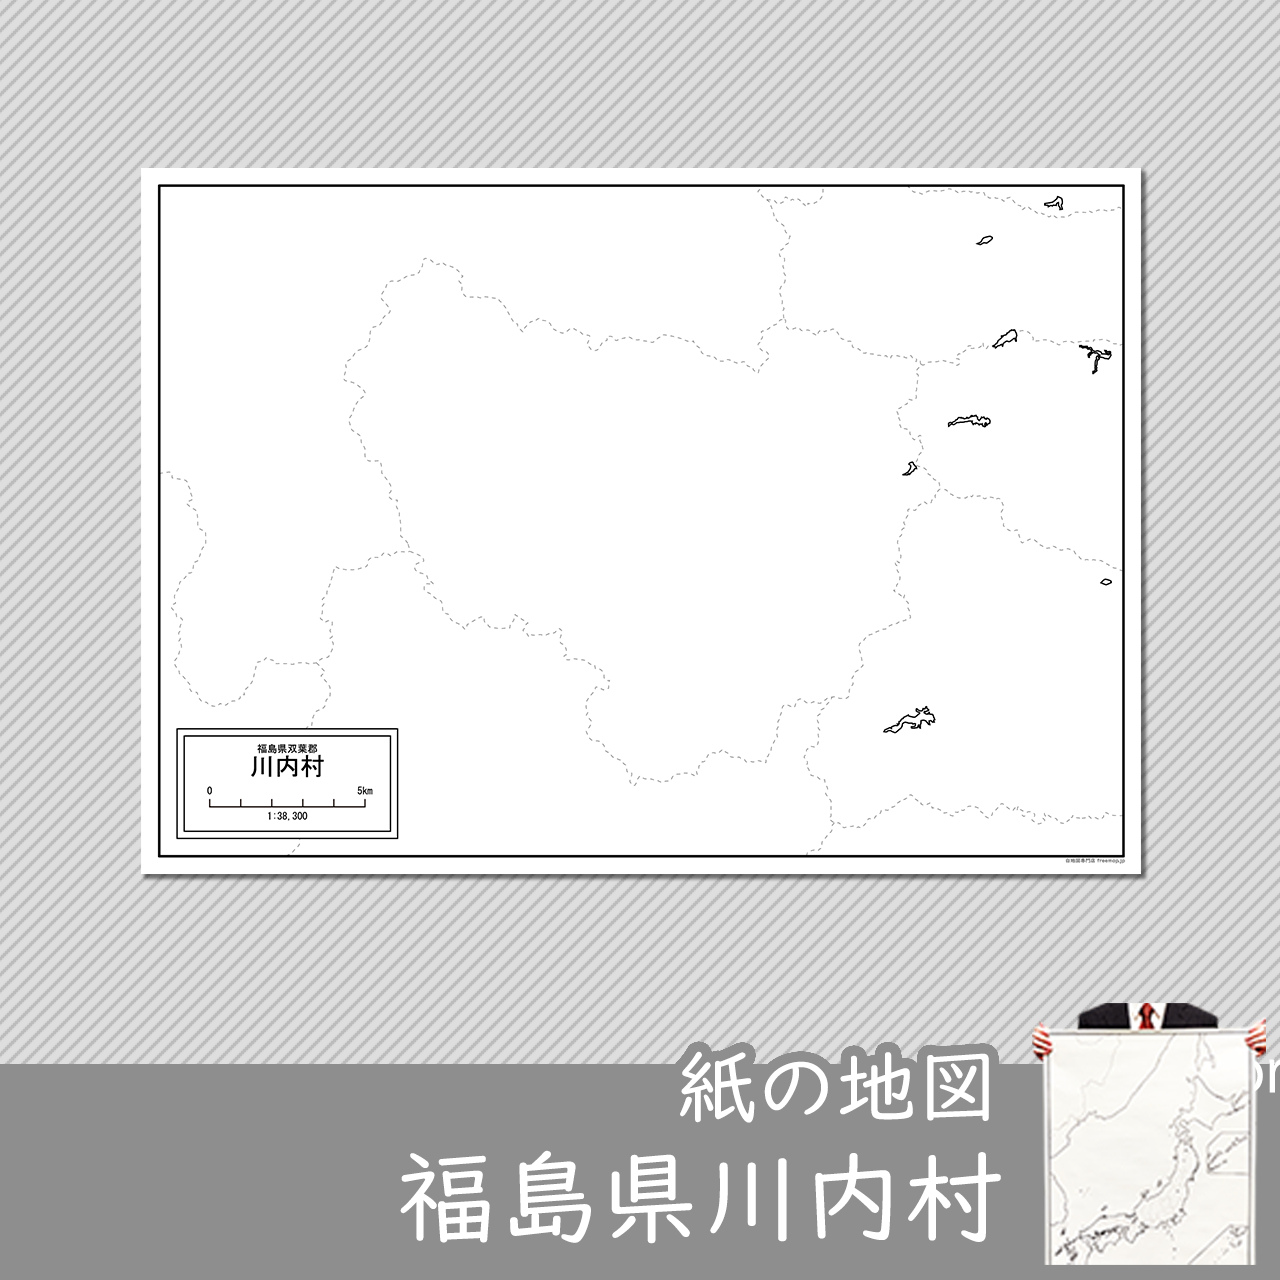 川内村の紙の白地図のサムネイル